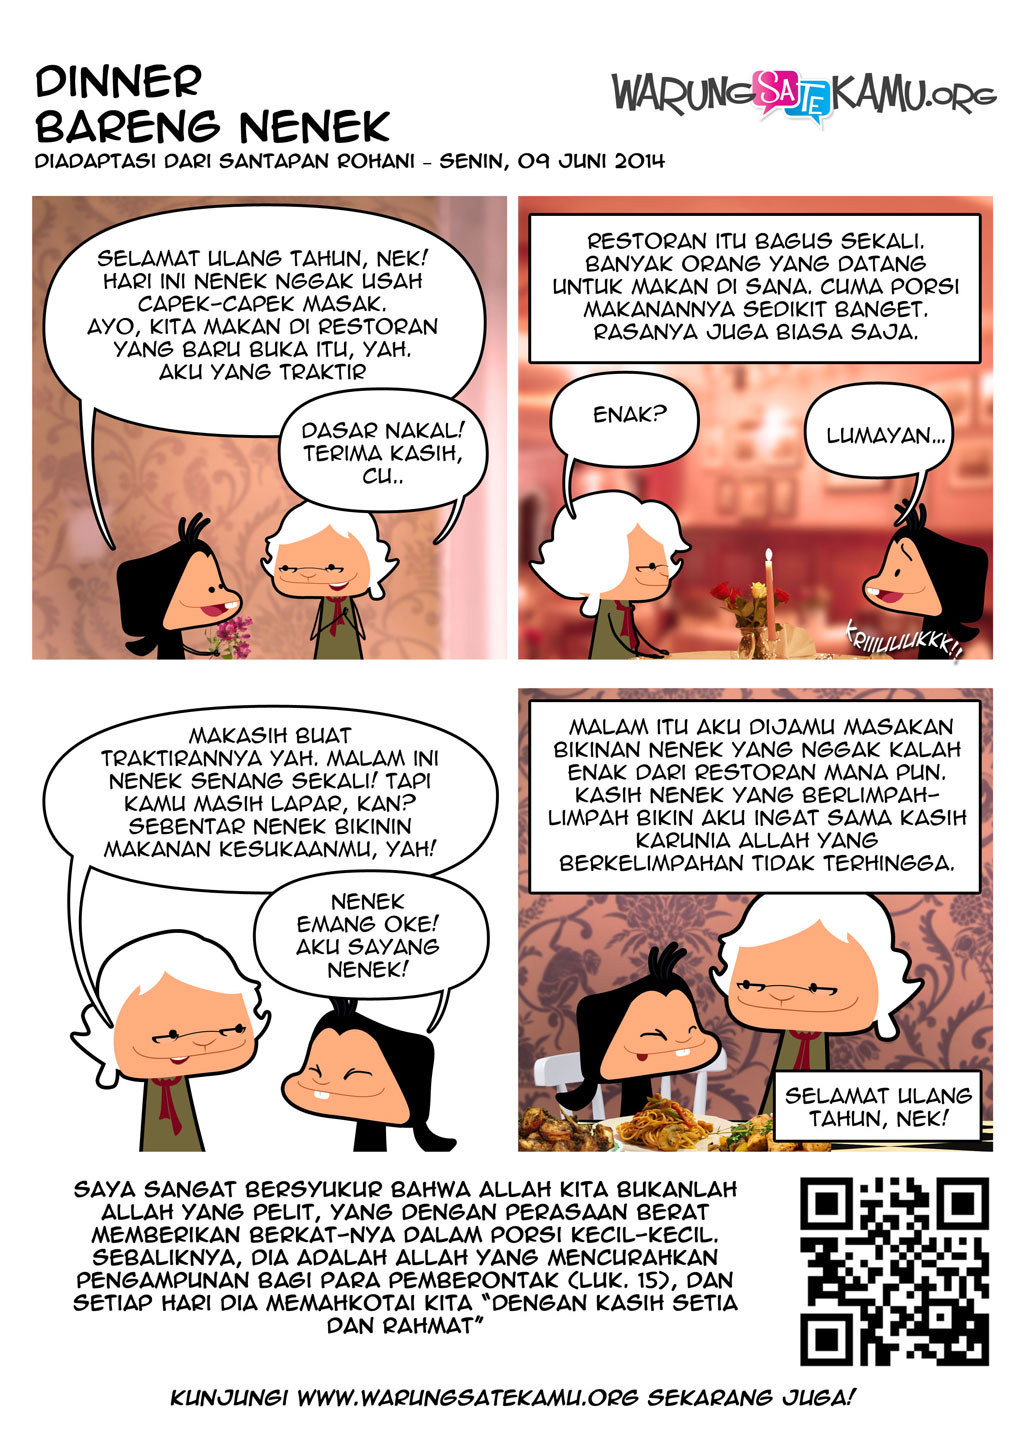 Komik-Strip-WarungSateKamu-20140609-Dinner-Bareng-Nenek